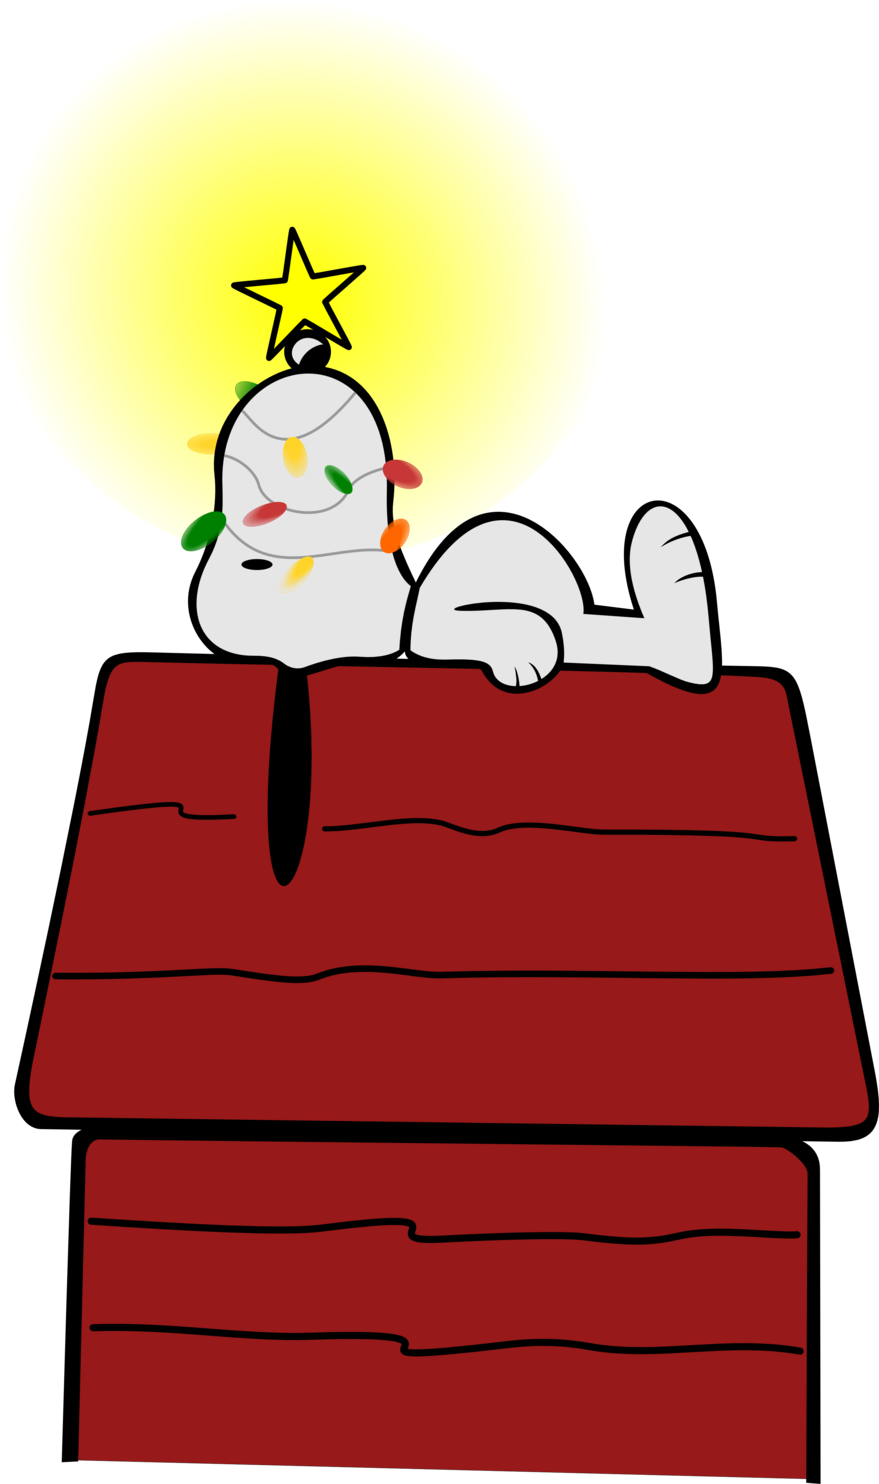 Imagen Transparente de la Navidad Snoopy